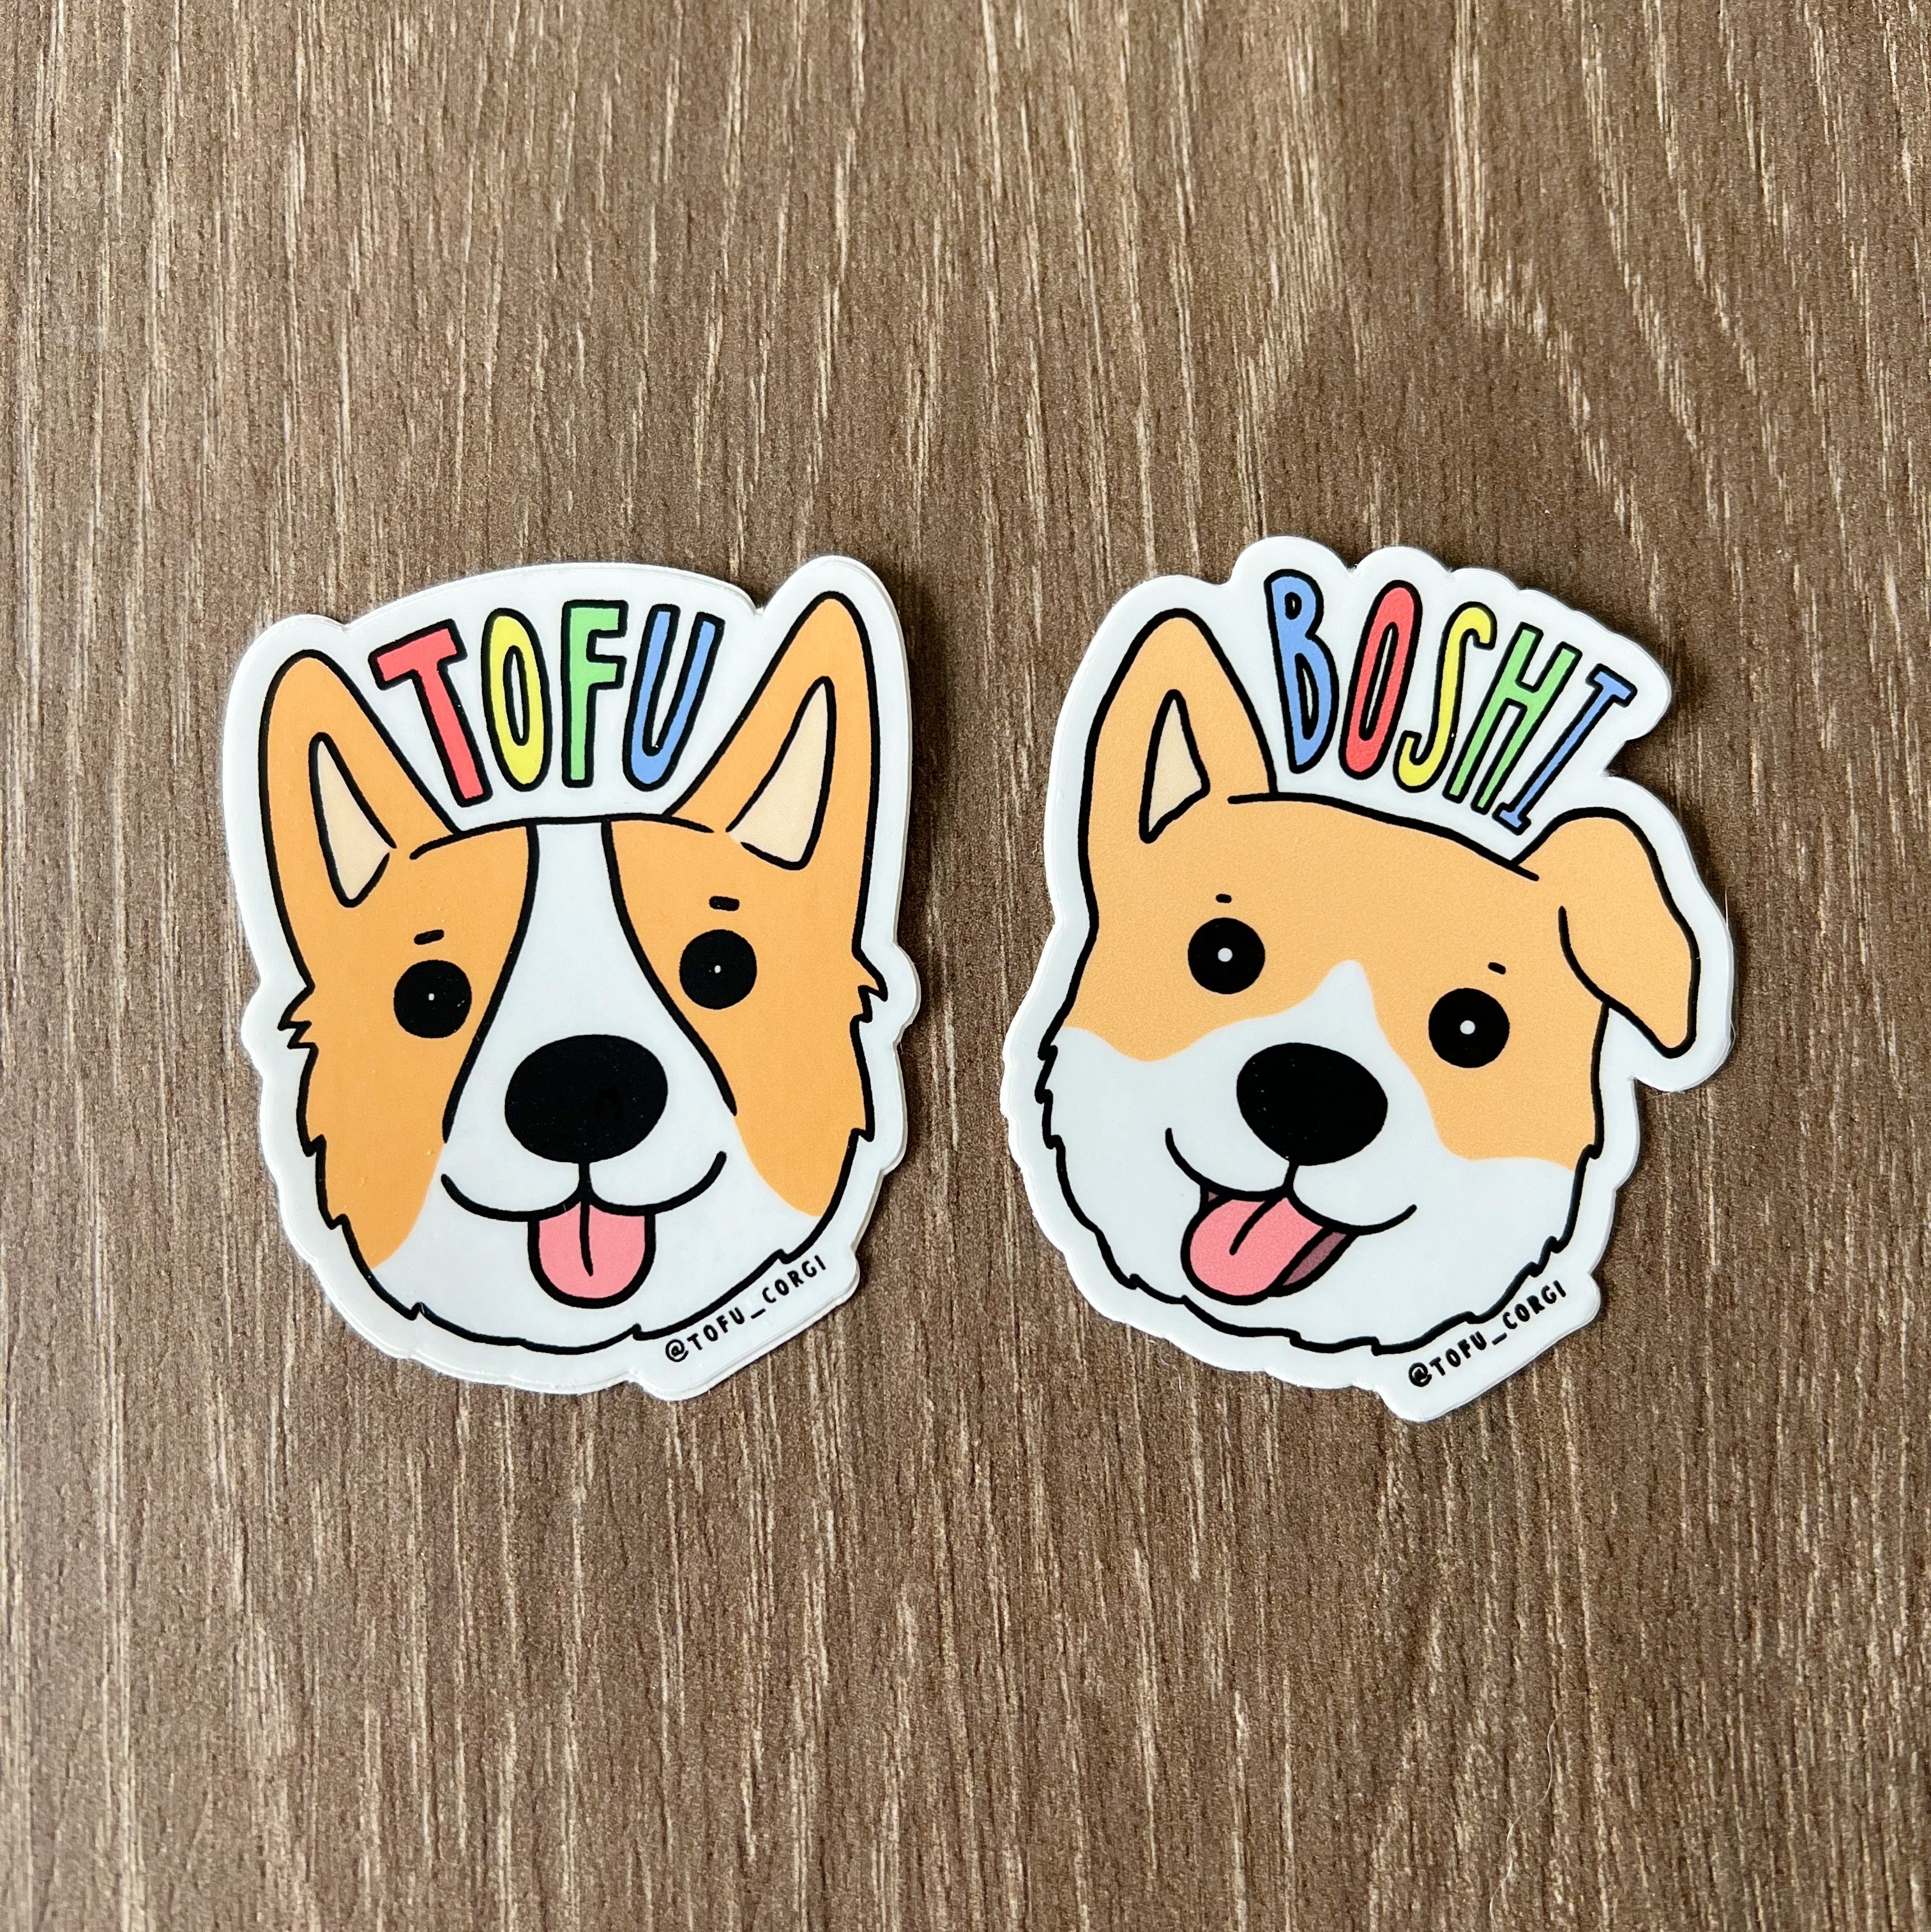 Tofu & Boshi Face Stickers